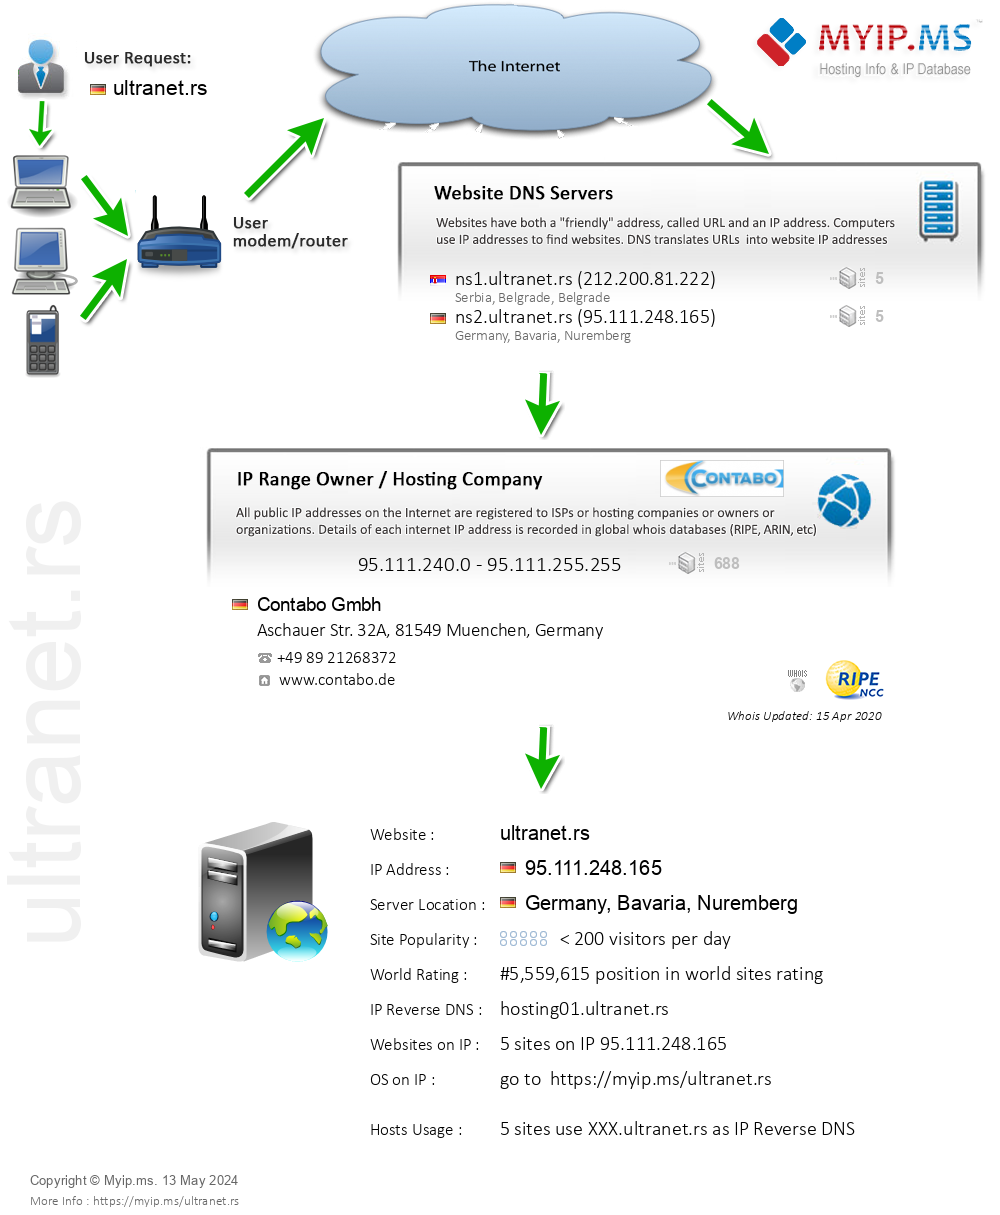 Ultranet.rs - Website Hosting Visual IP Diagram